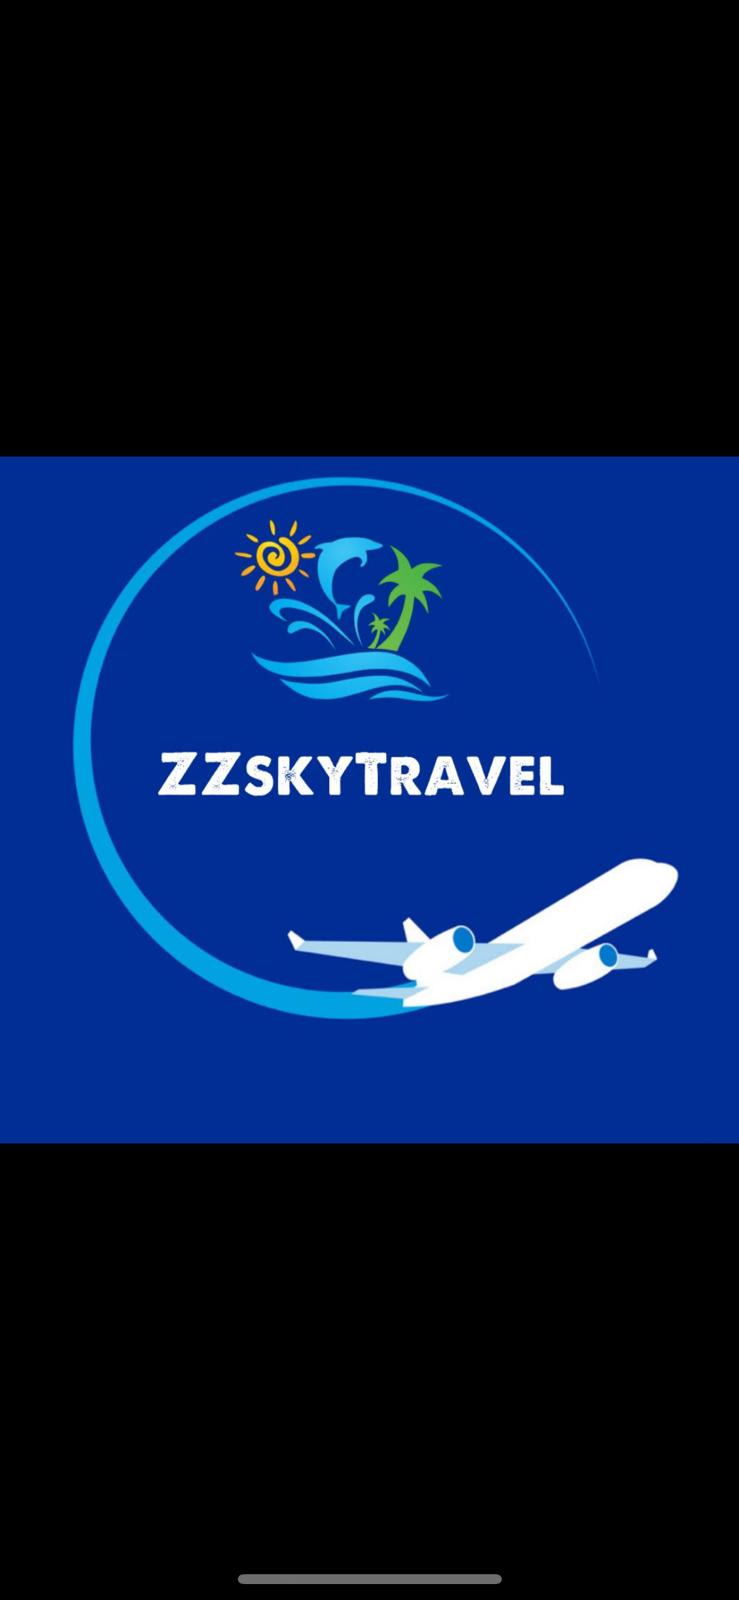 ZZ Sky Travel